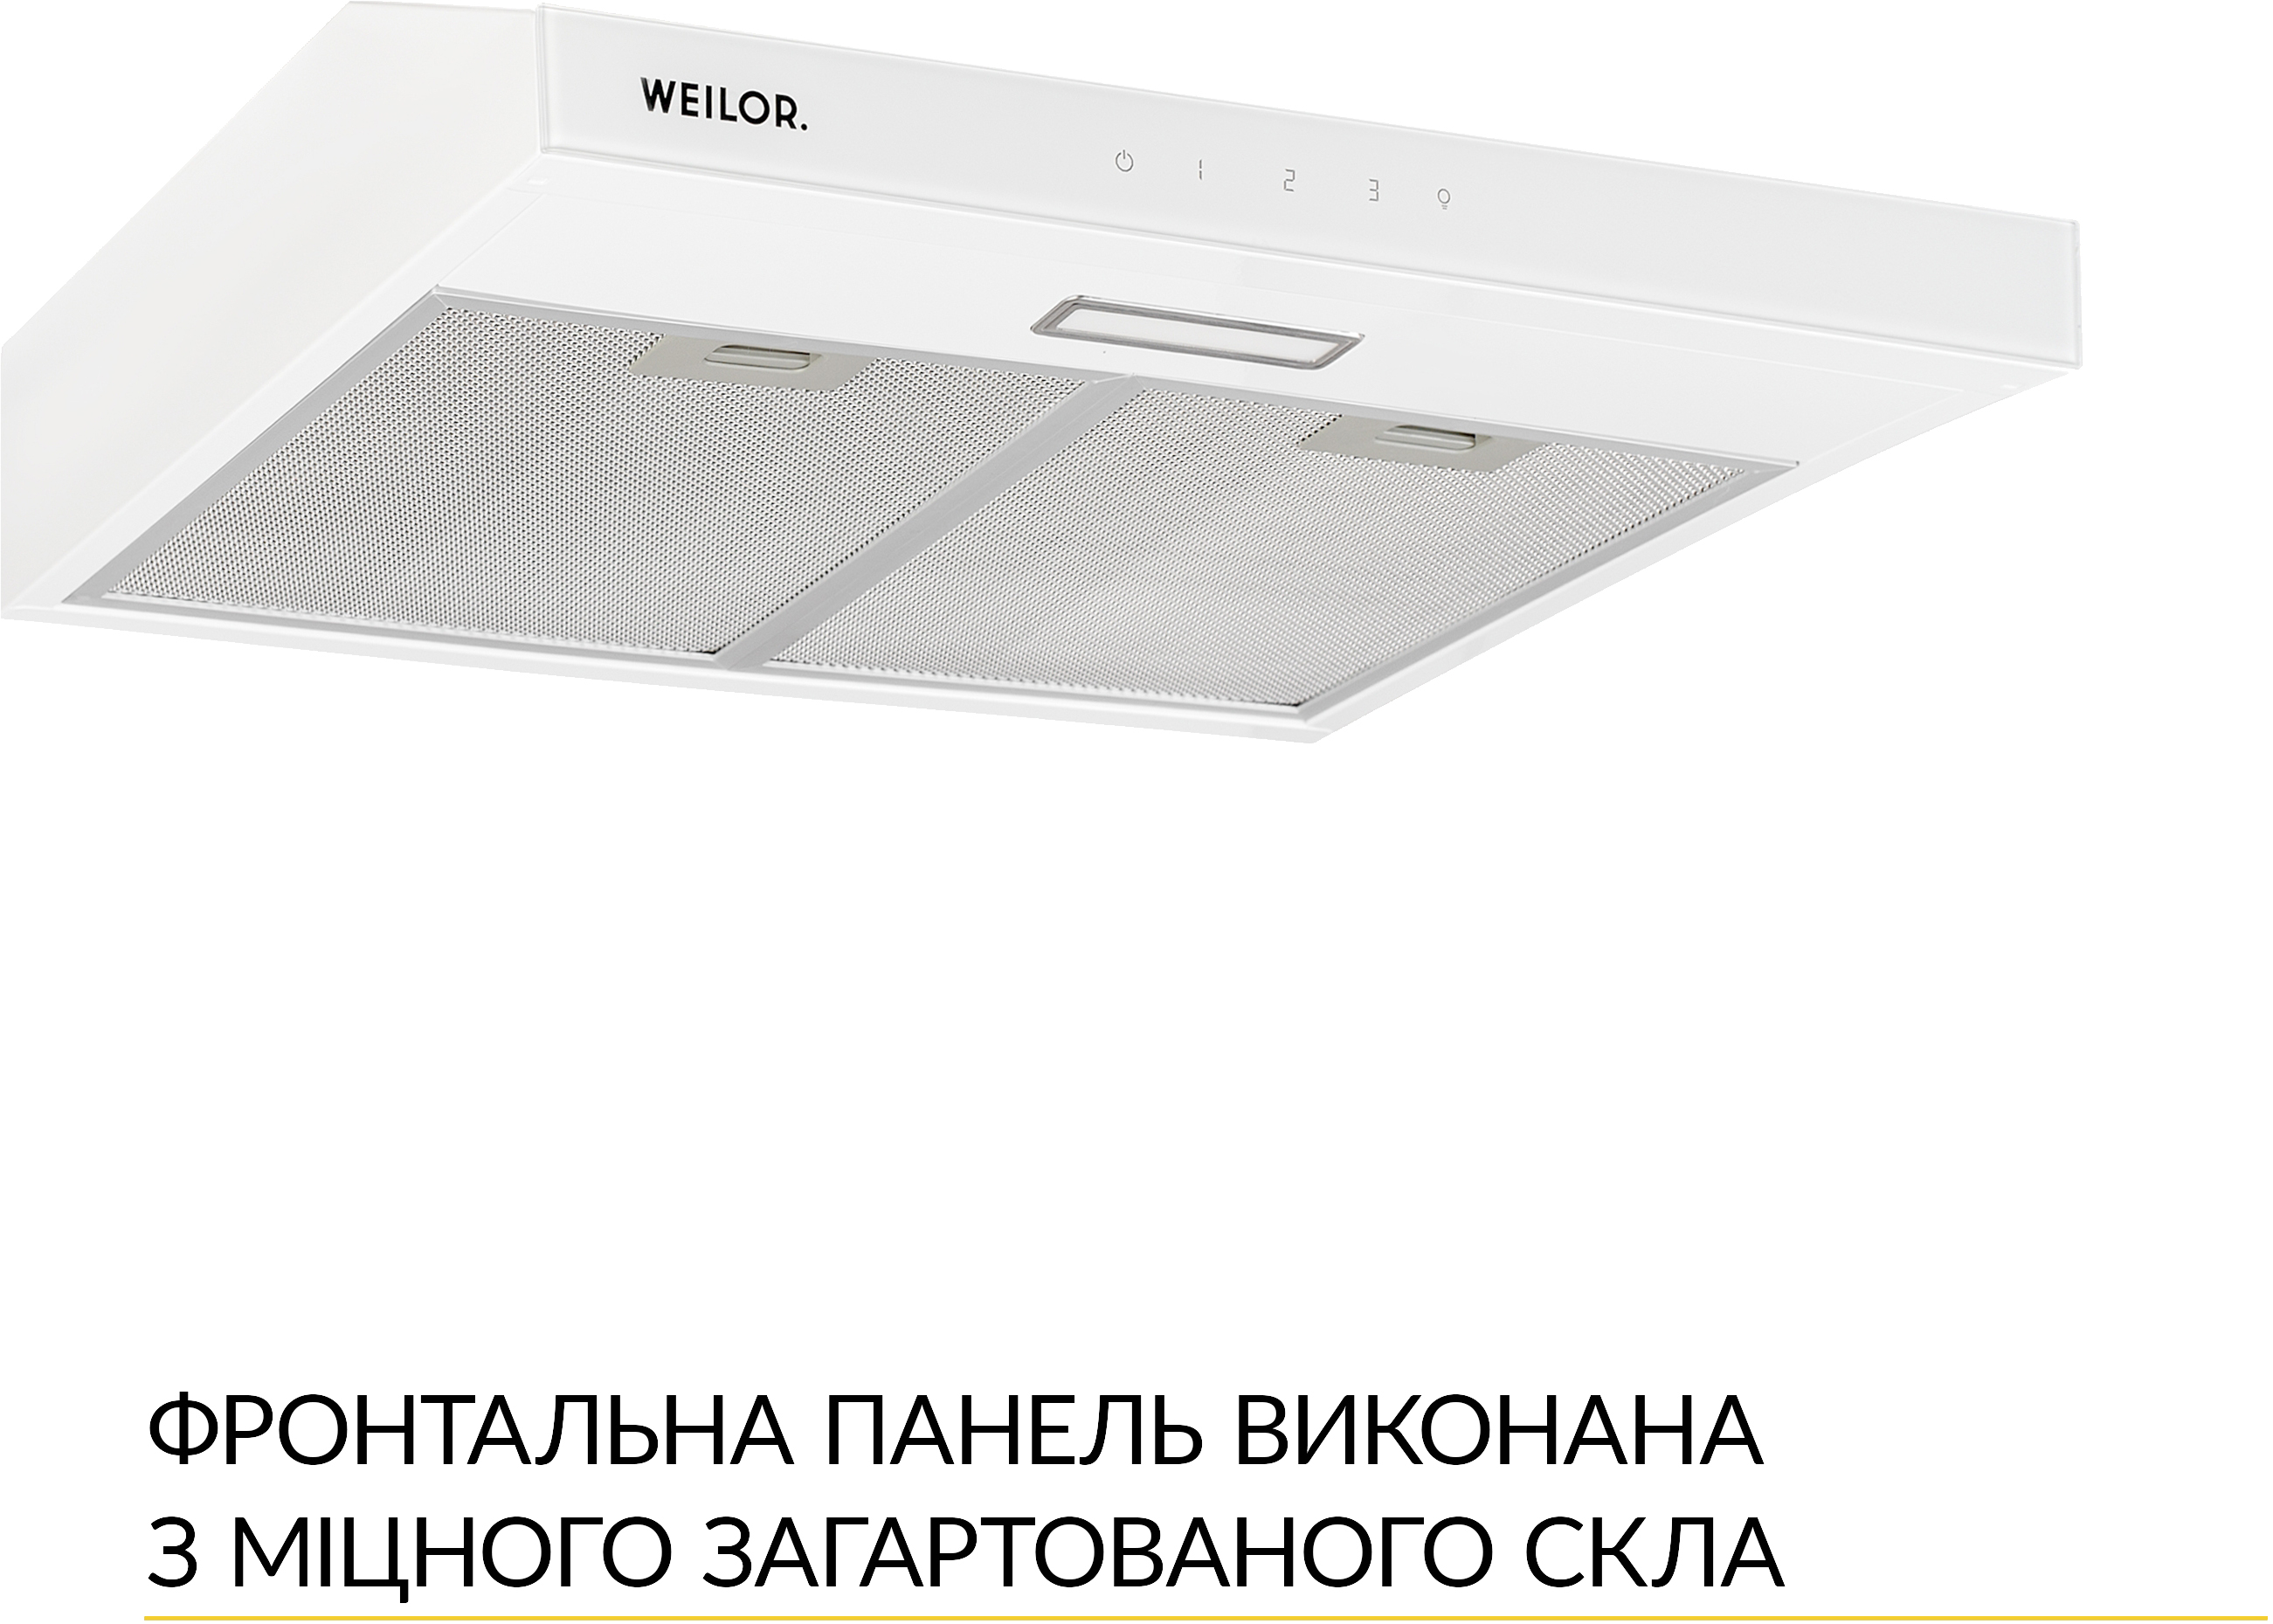 Вытяжка кухонная Weilor WPL 5092 WH цена 3499.00 грн - фотография 2